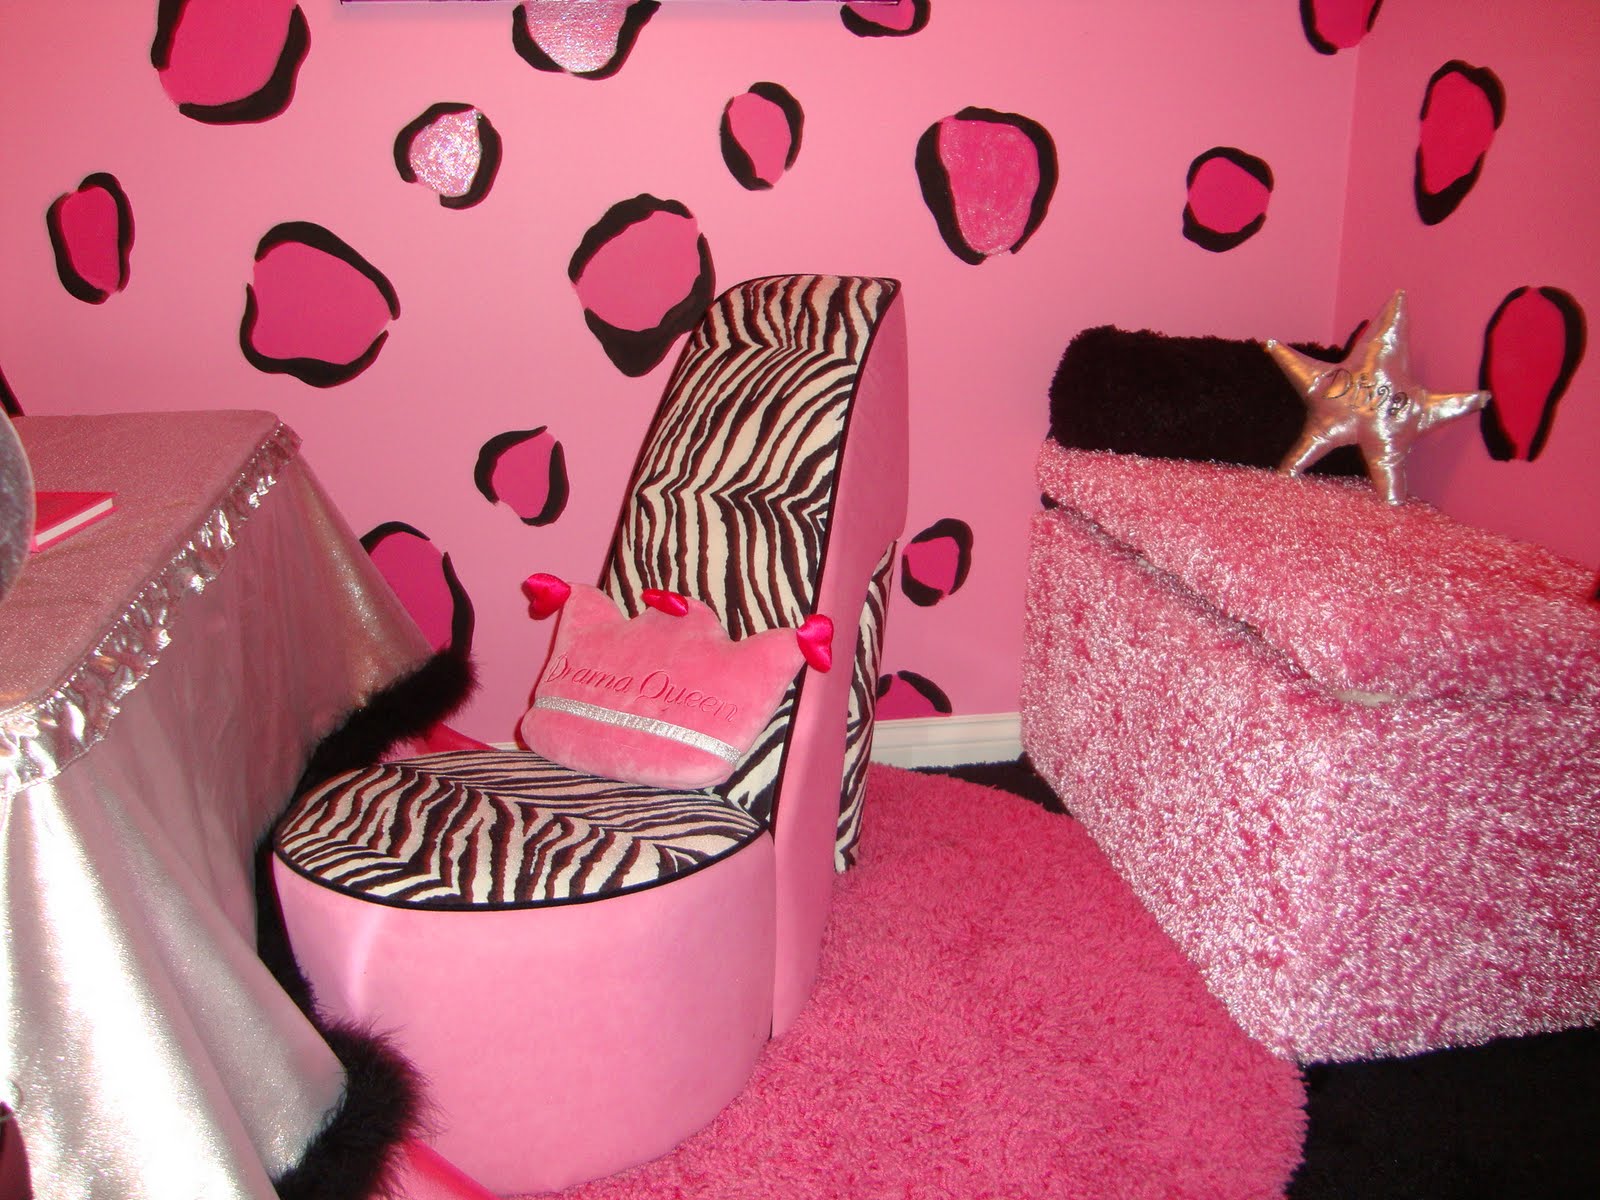 http://3.bp.blogspot.com/_L-deInbQA9c/S-GiJfLSHzI/AAAAAAAAHeU/FsL5E6jOZWg/s1600/hot-pink-zebra-teen-hangout-room.JPG